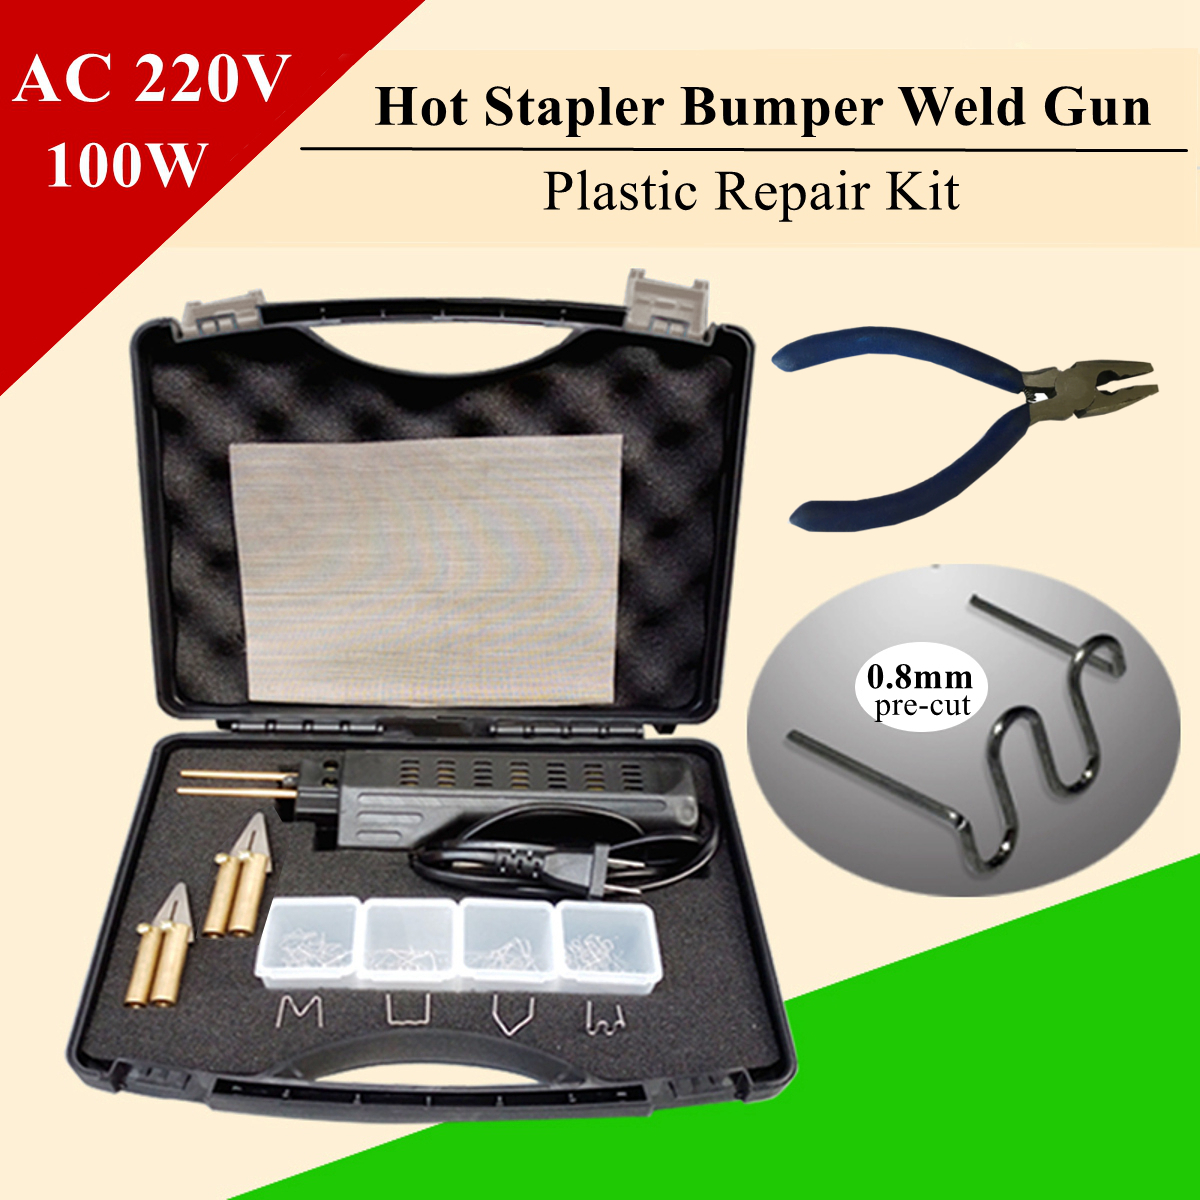 206 pcs Hot Stapler Bumper Fender Fairing Welder Plastic Repair Kitl